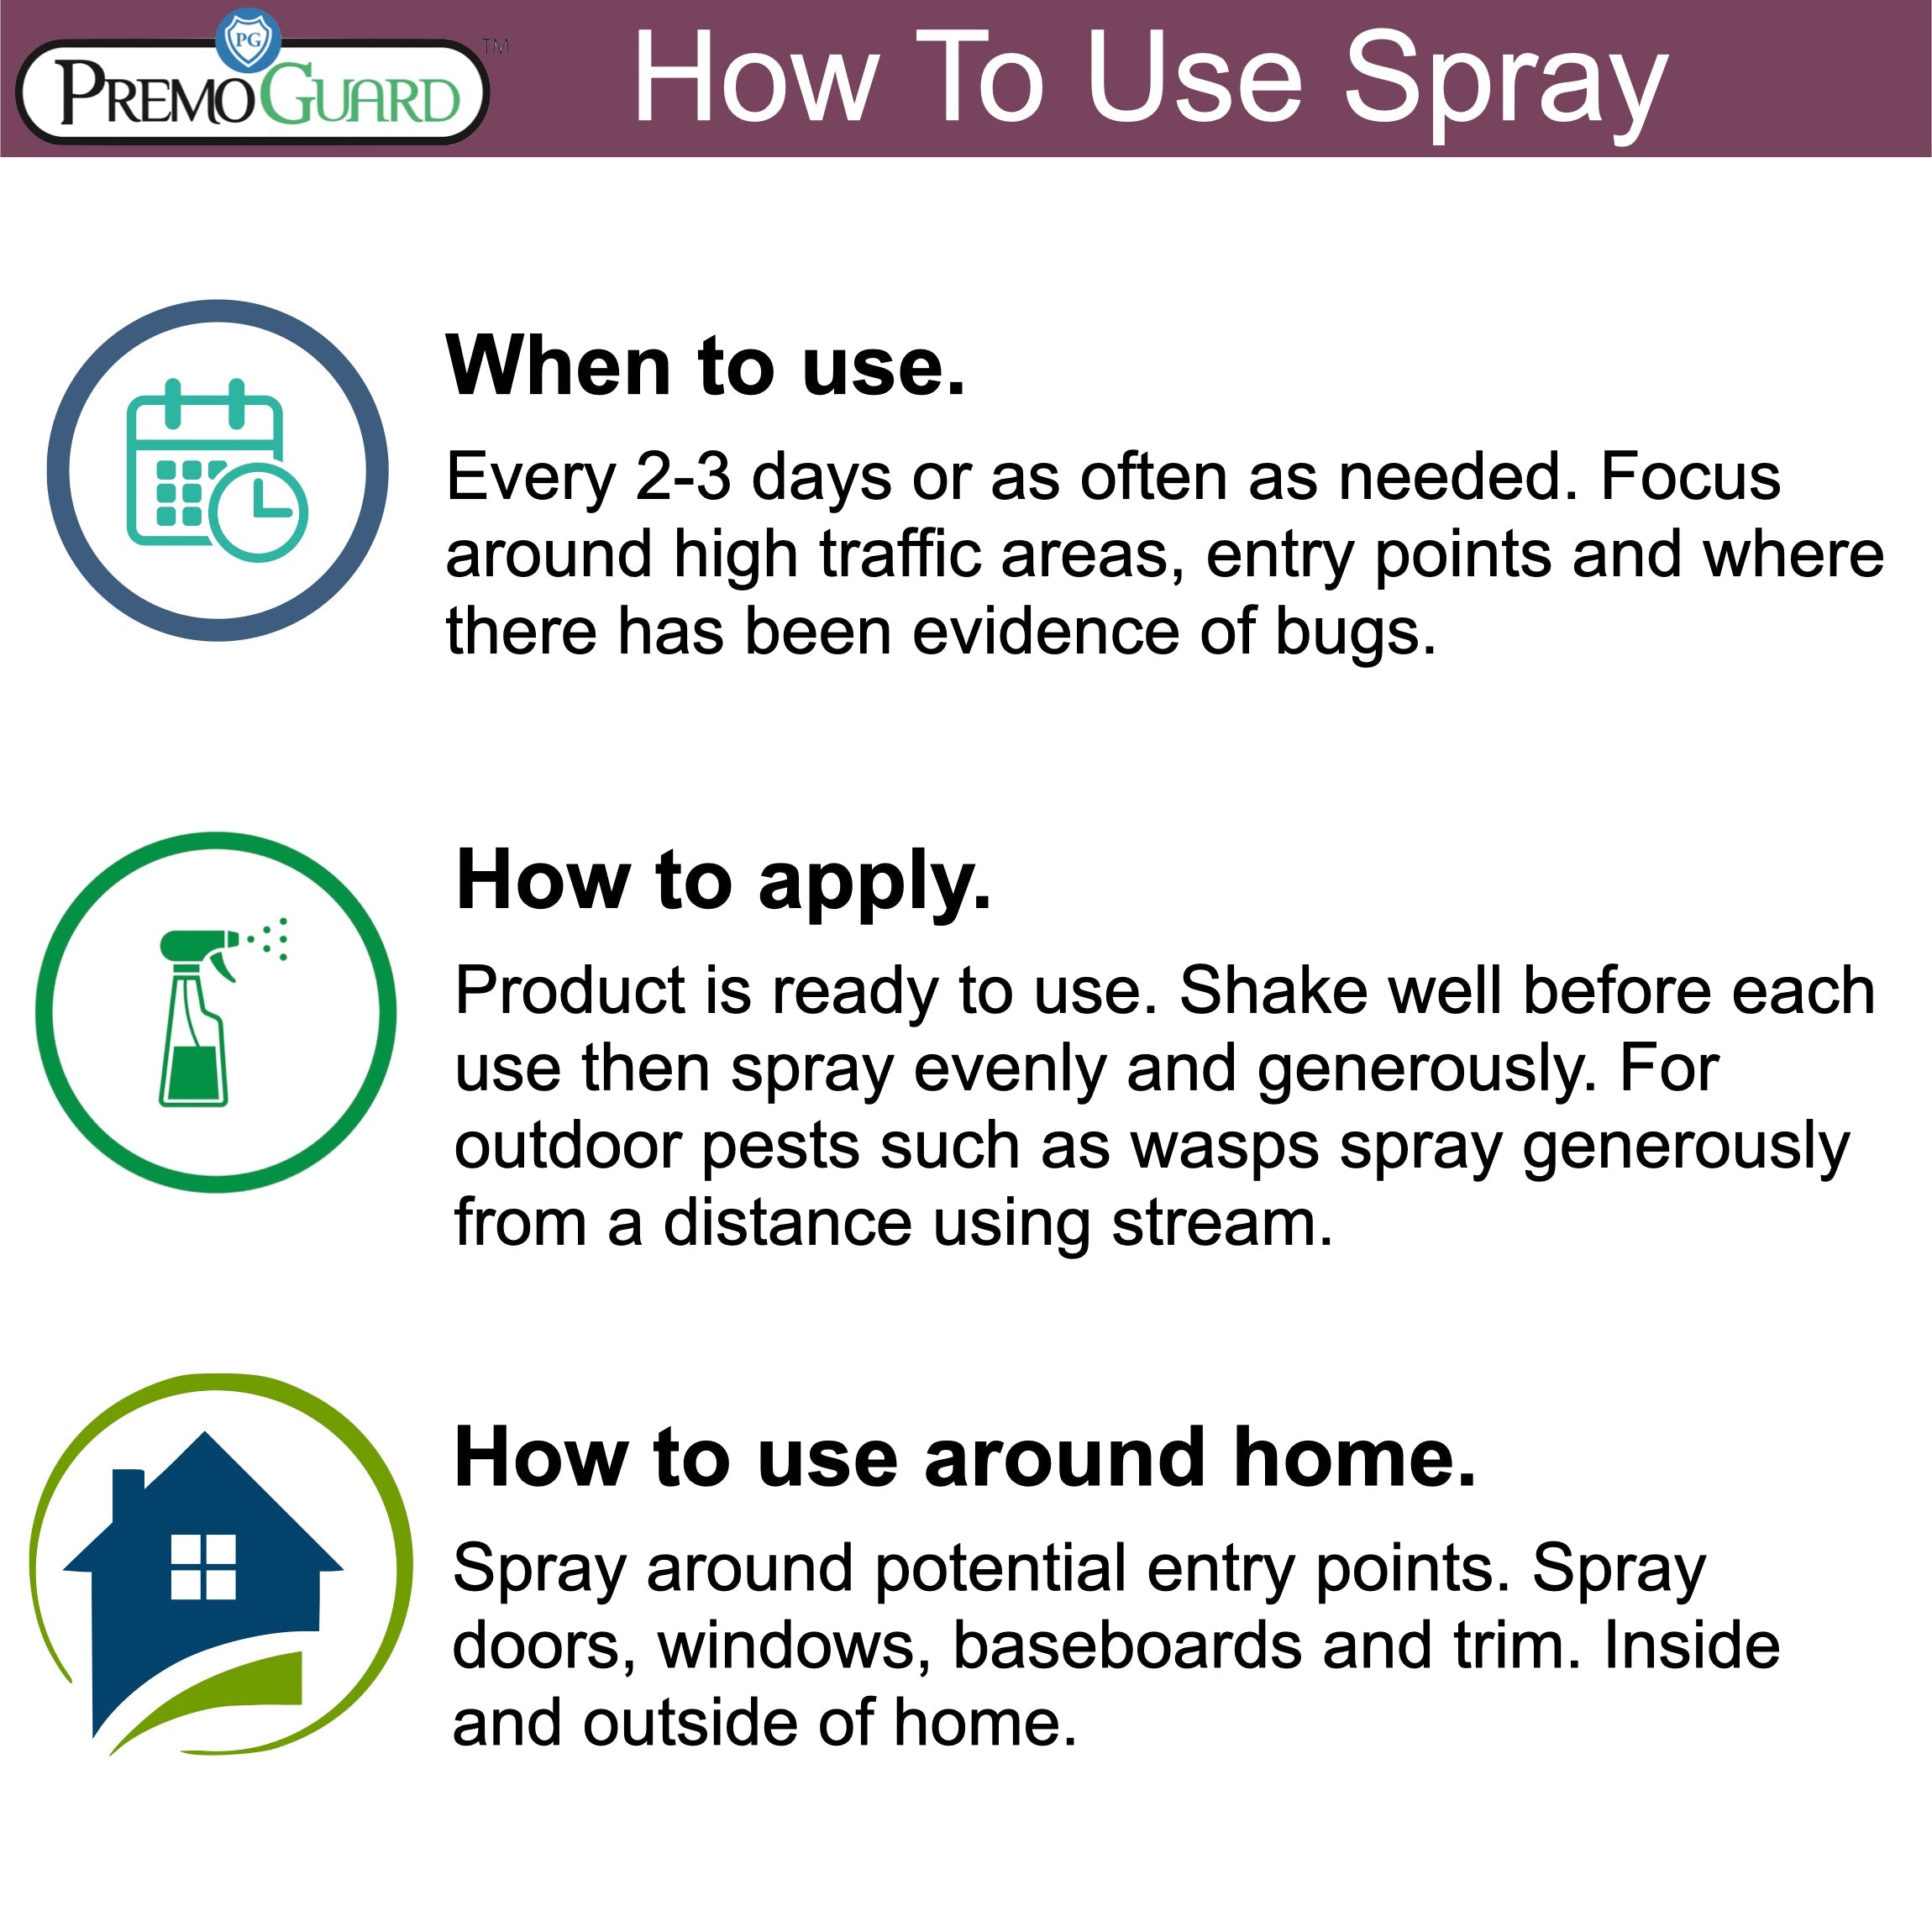 All Purpose Pest Control Spray by Premo Guard - 32 oz